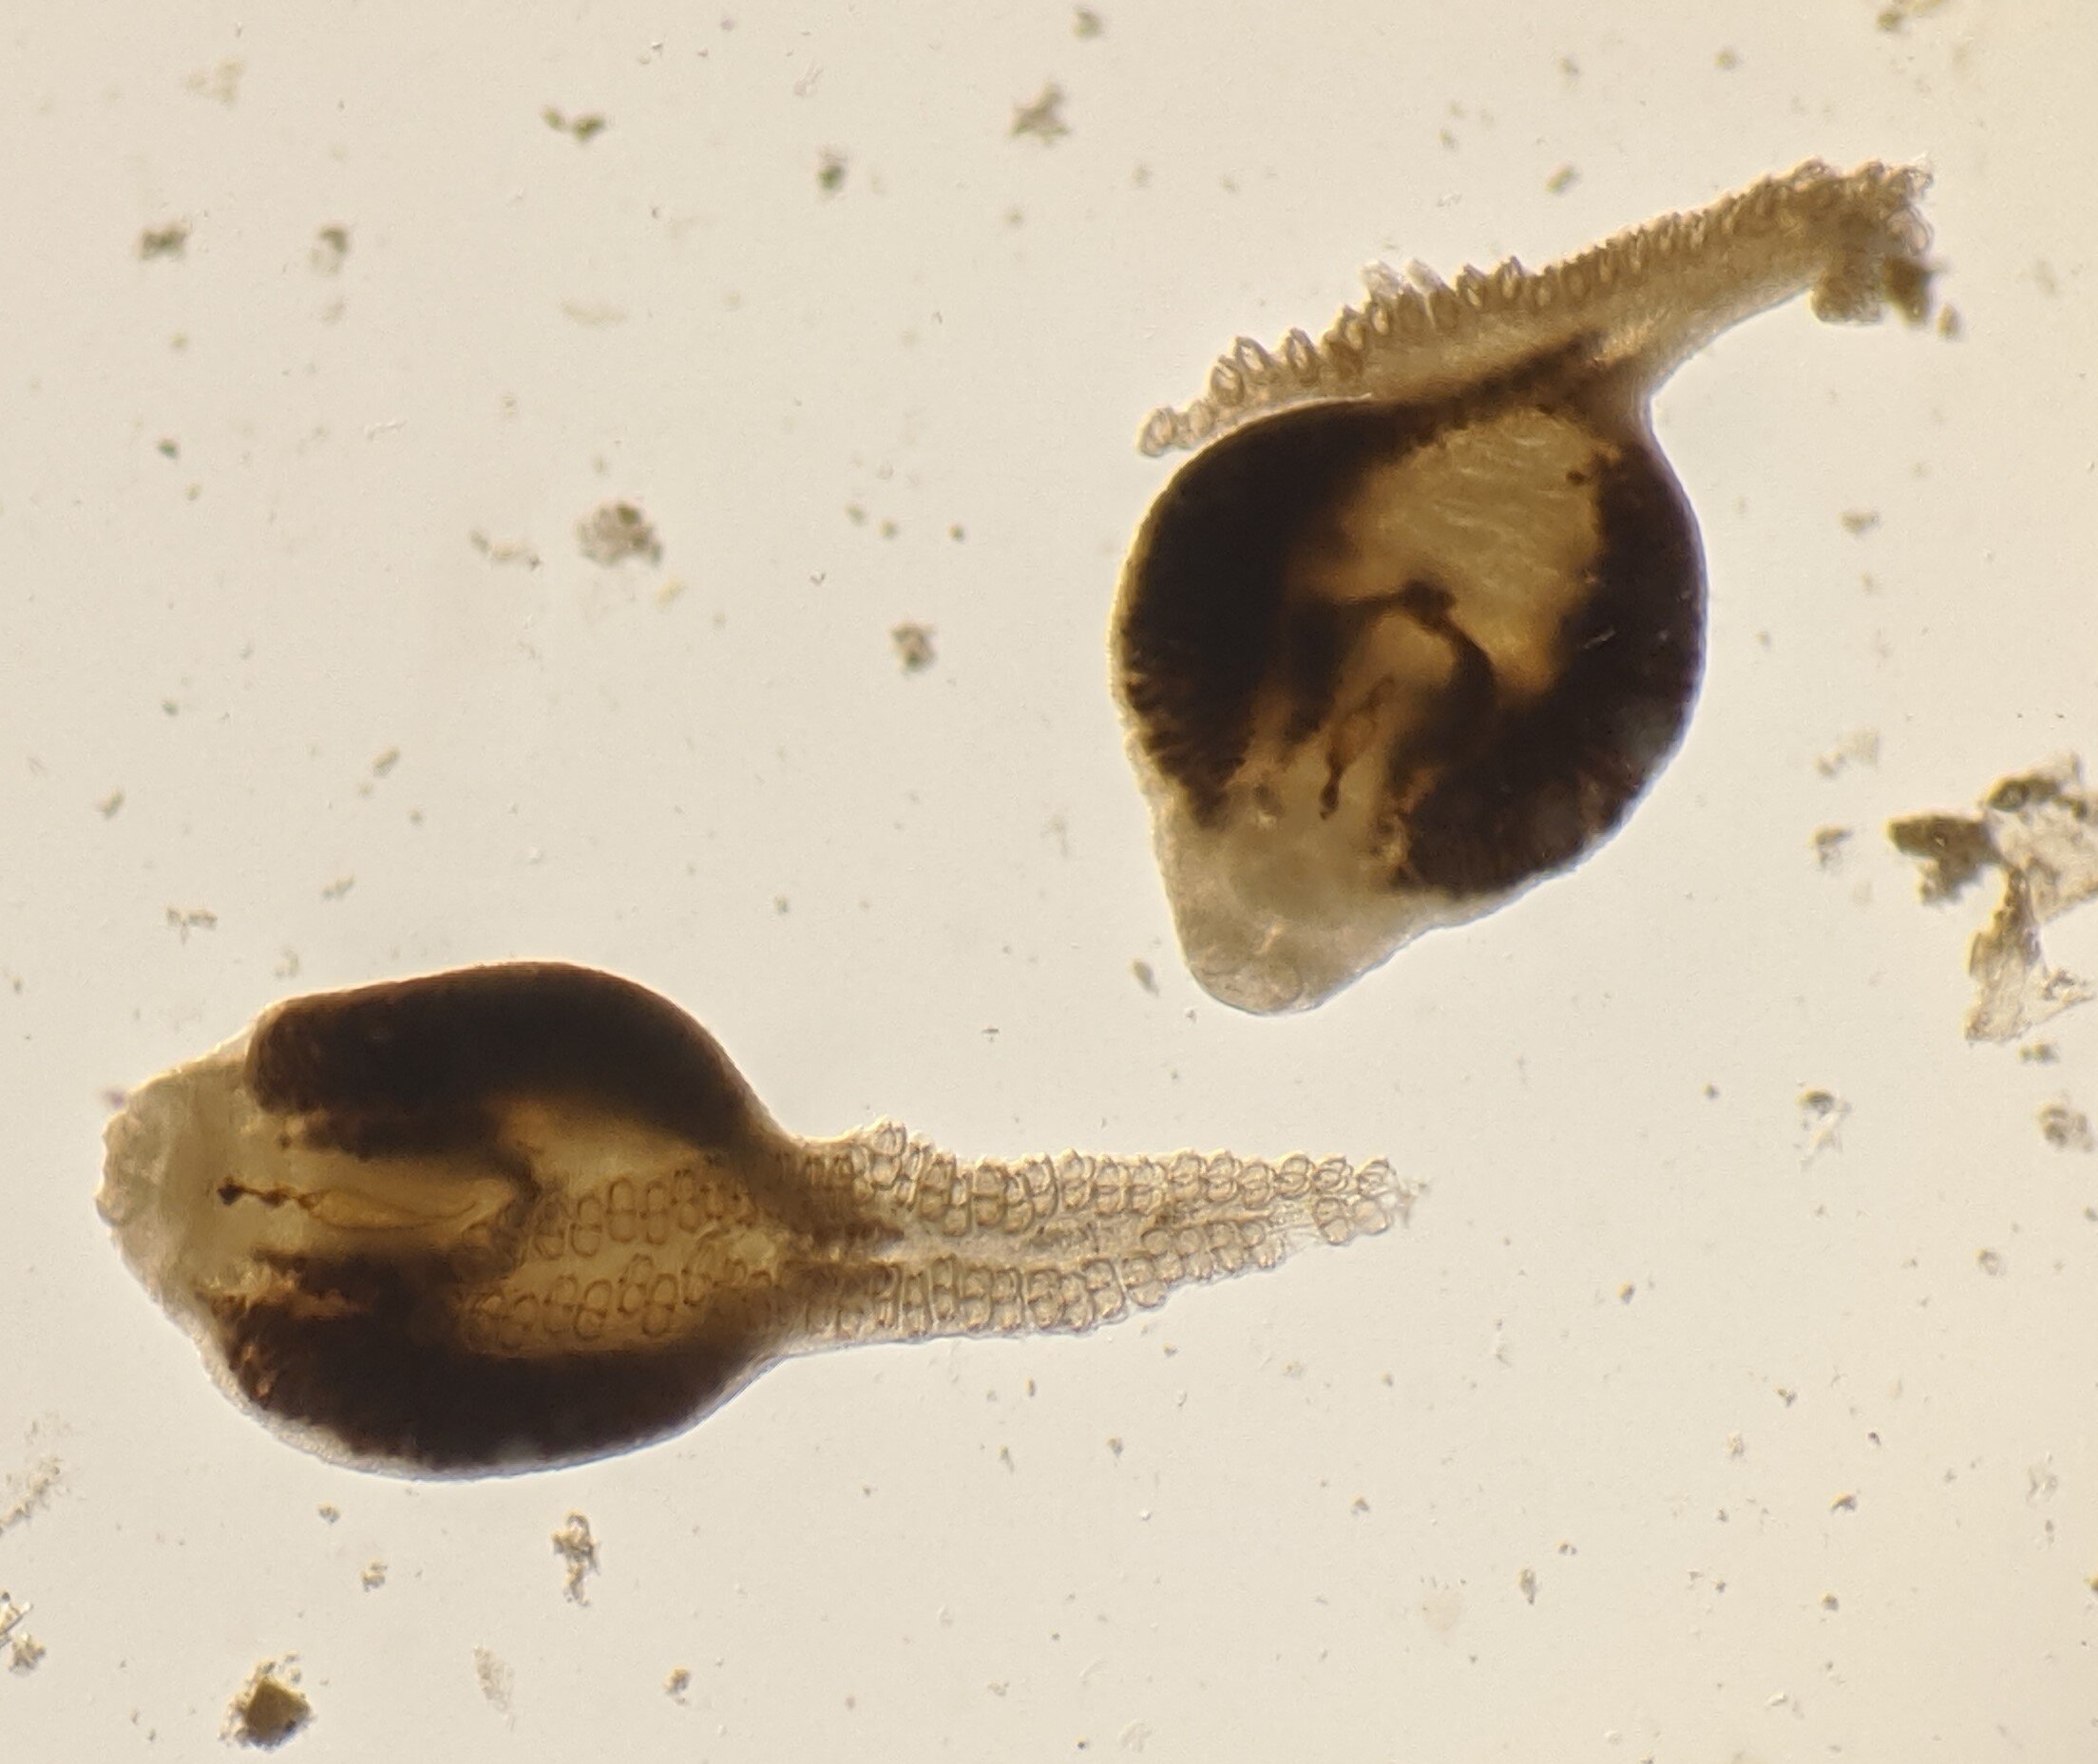 Паразити моногенеї (Microcotyle sebastis) з однієї з риб.&amp;nbsp;Katie Leslie / University of Washington